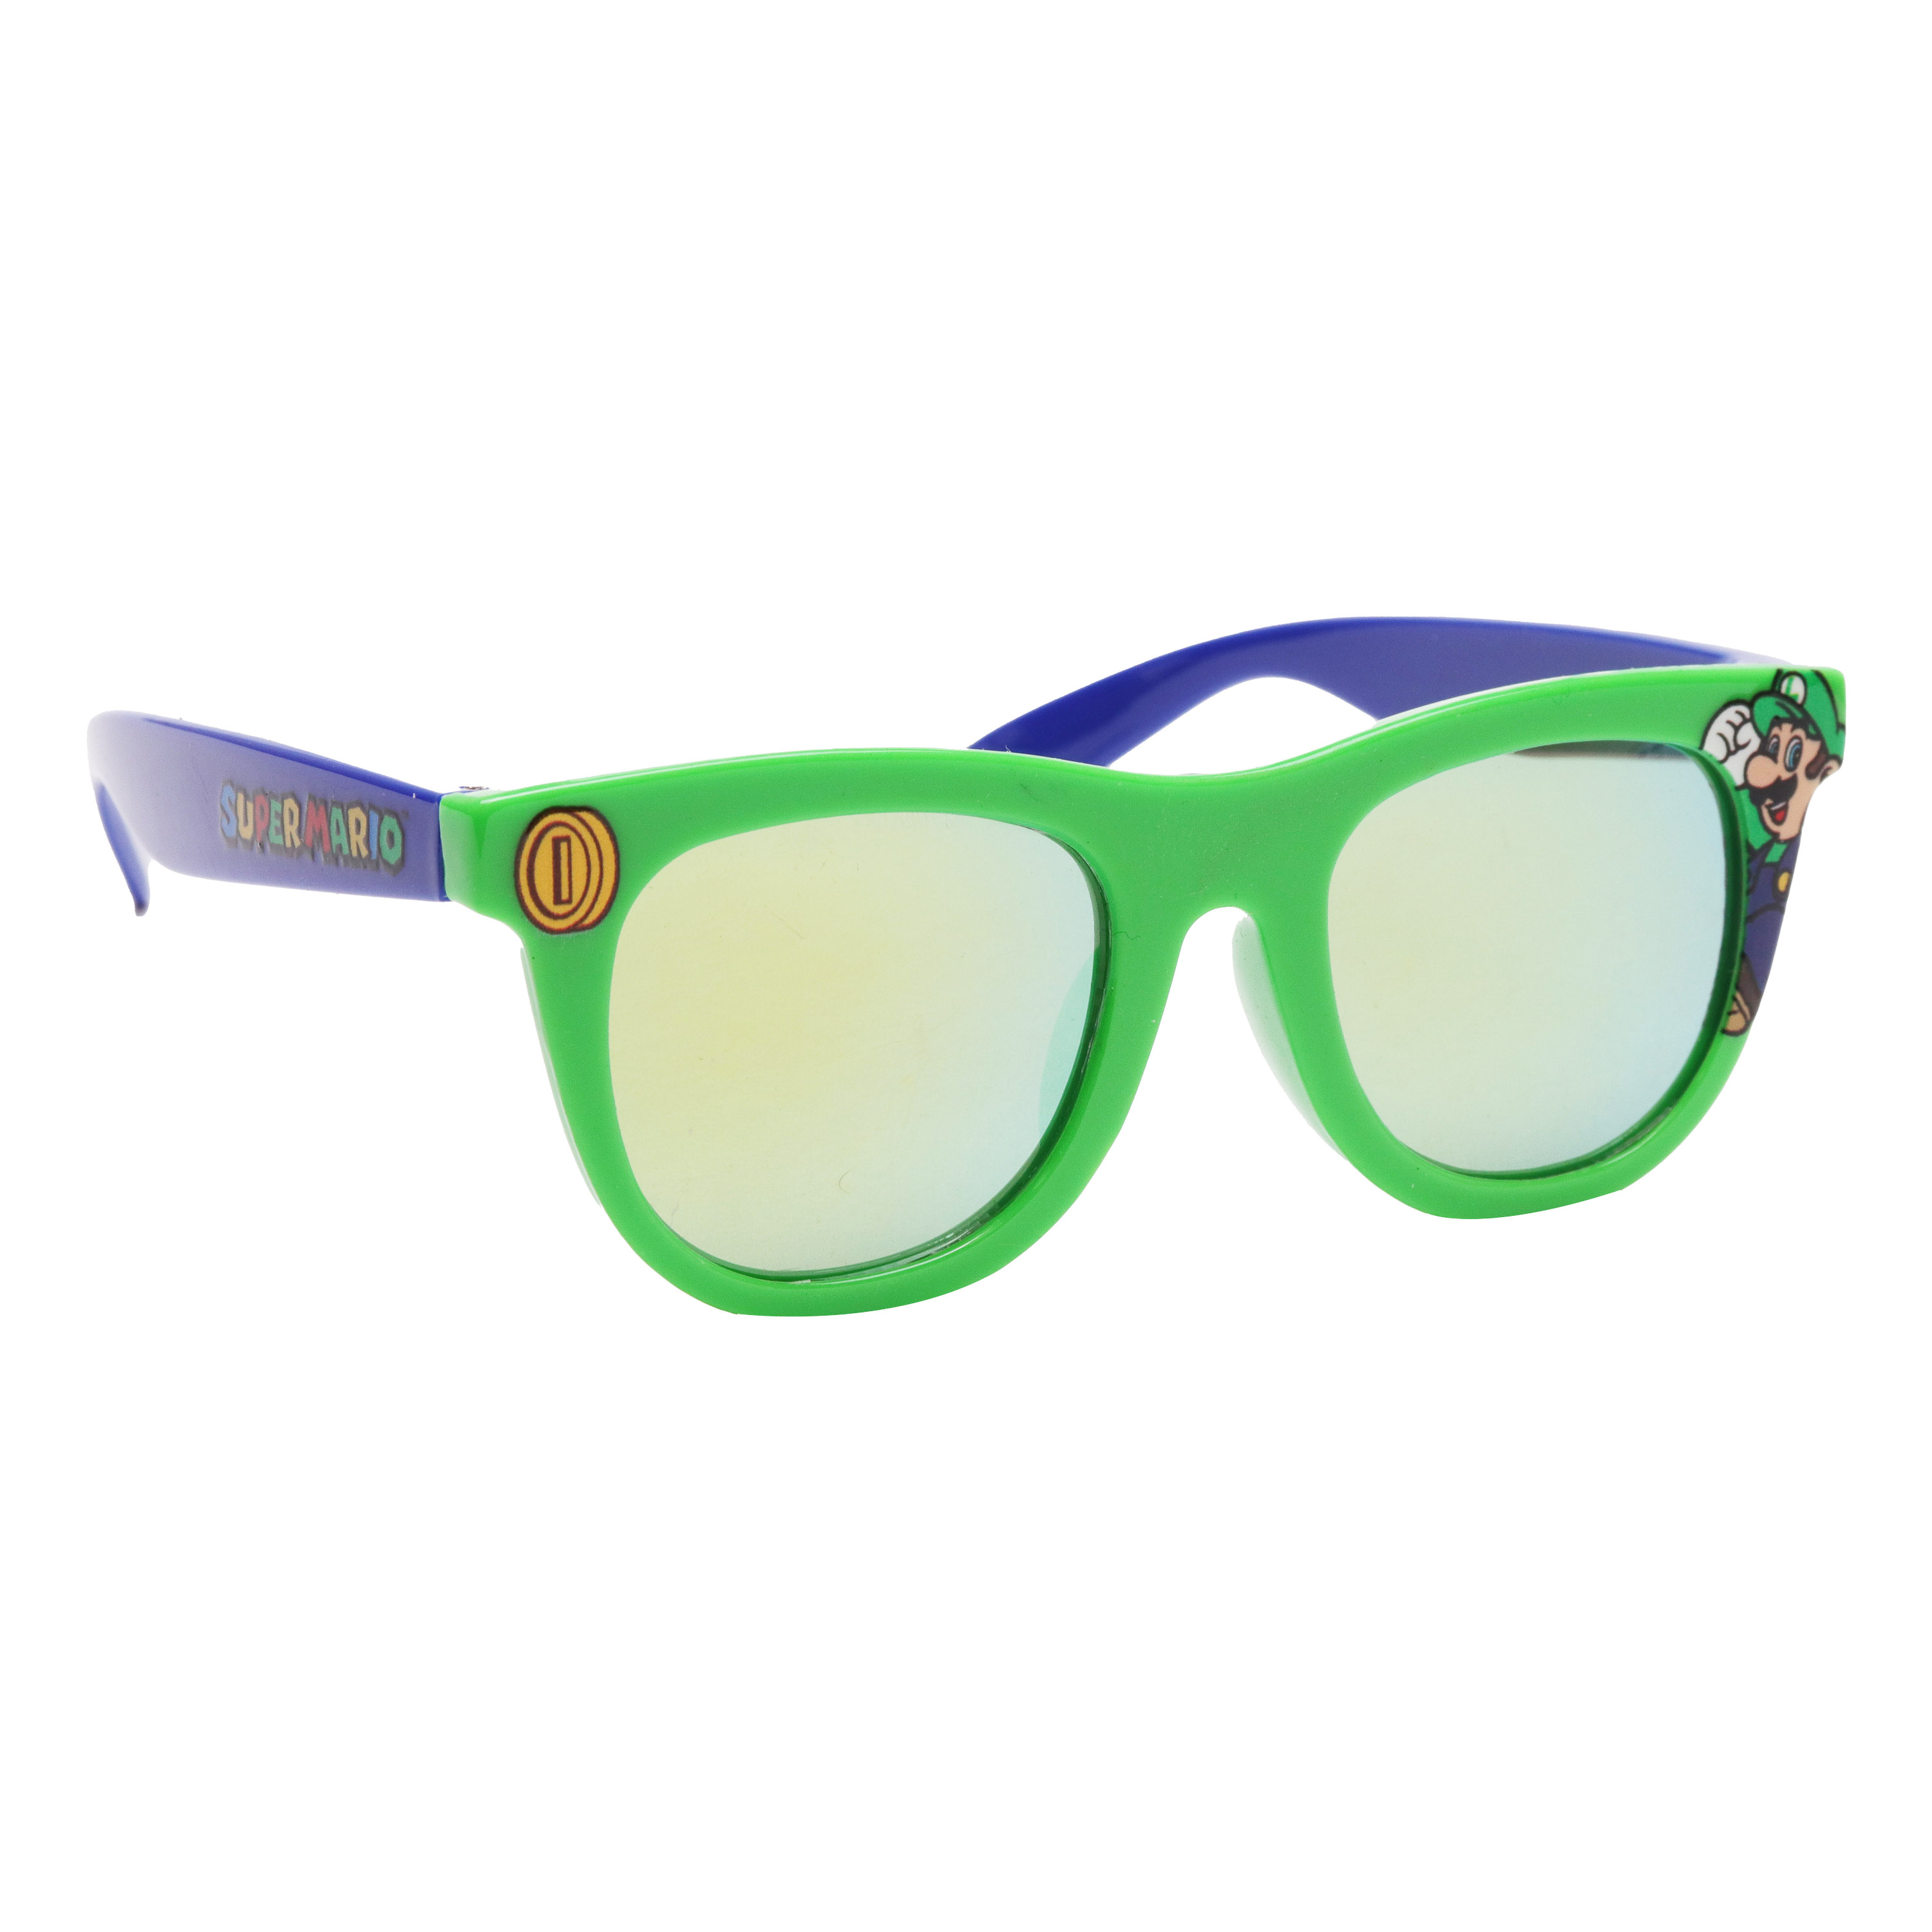 Nintendo Super Mario Luigi Kids Classic Sunglasses Green - image 2 of 5